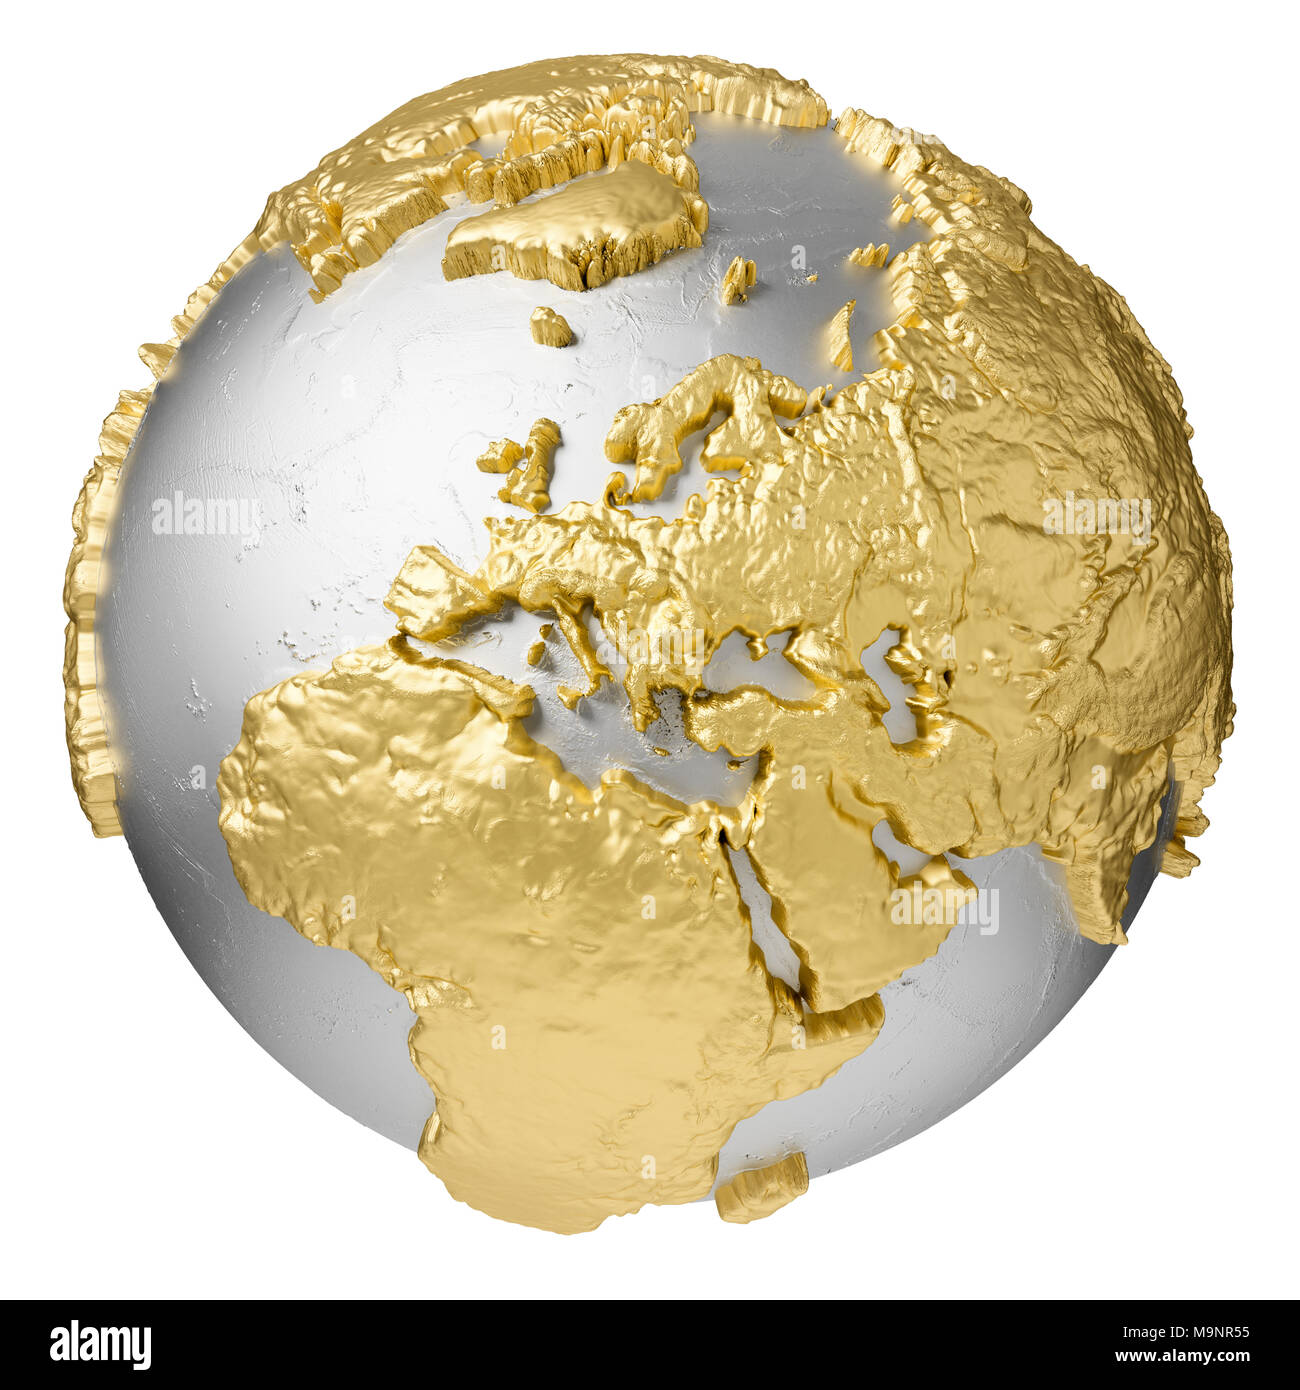 Gold, Silber Kugel ohne Wasser. Europa. 3D-Rendering auf weißem Hintergrund. Elemente dieses Bild von der NASA eingerichtet Stockfoto